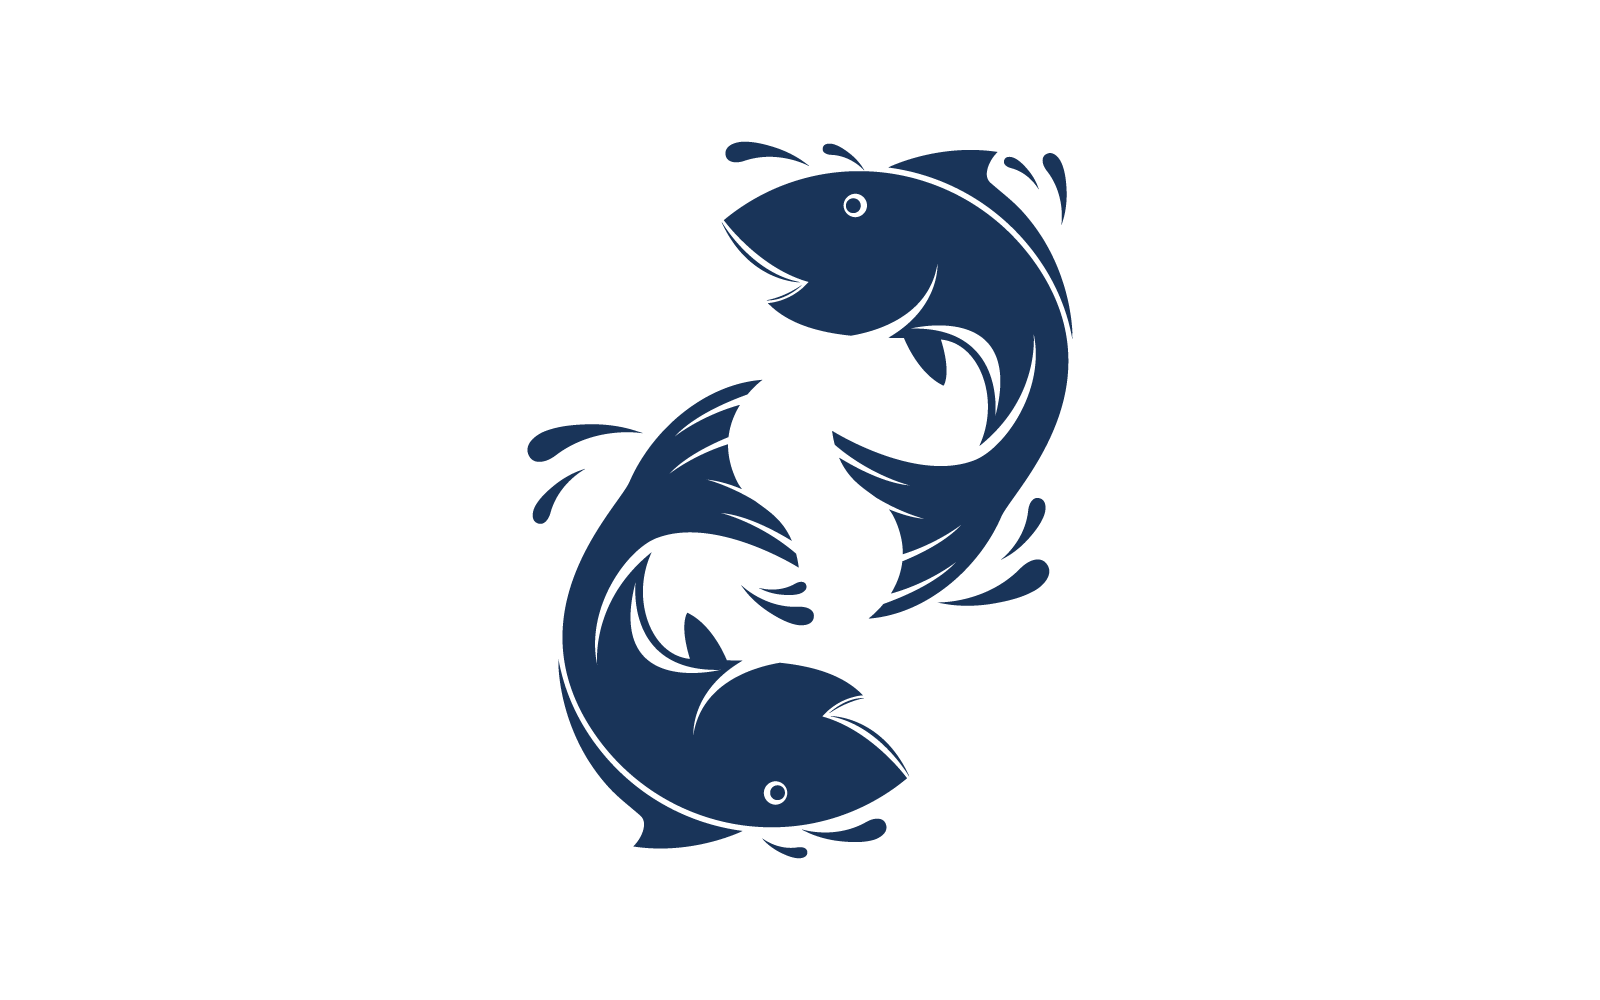 Fish illustration icon vector design template